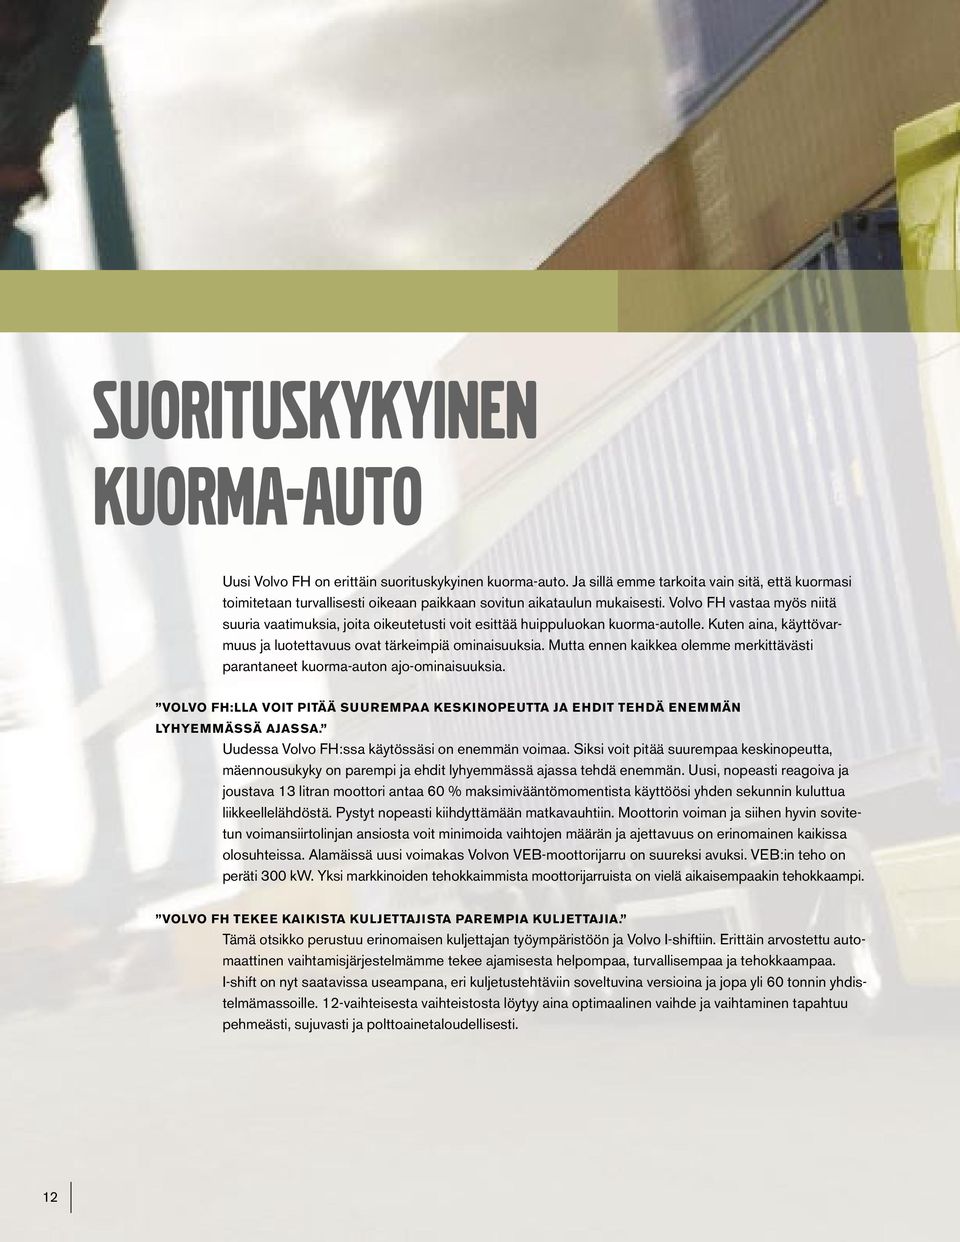 Volvo FH vastaa myös niitä suuria vaatimuksia, joita oikeutetusti voit esittää huippuluokan kuorma-autolle. Kuten aina, käyttövarmuus ja luotettavuus ovat tärkeimpiä ominaisuuksia.